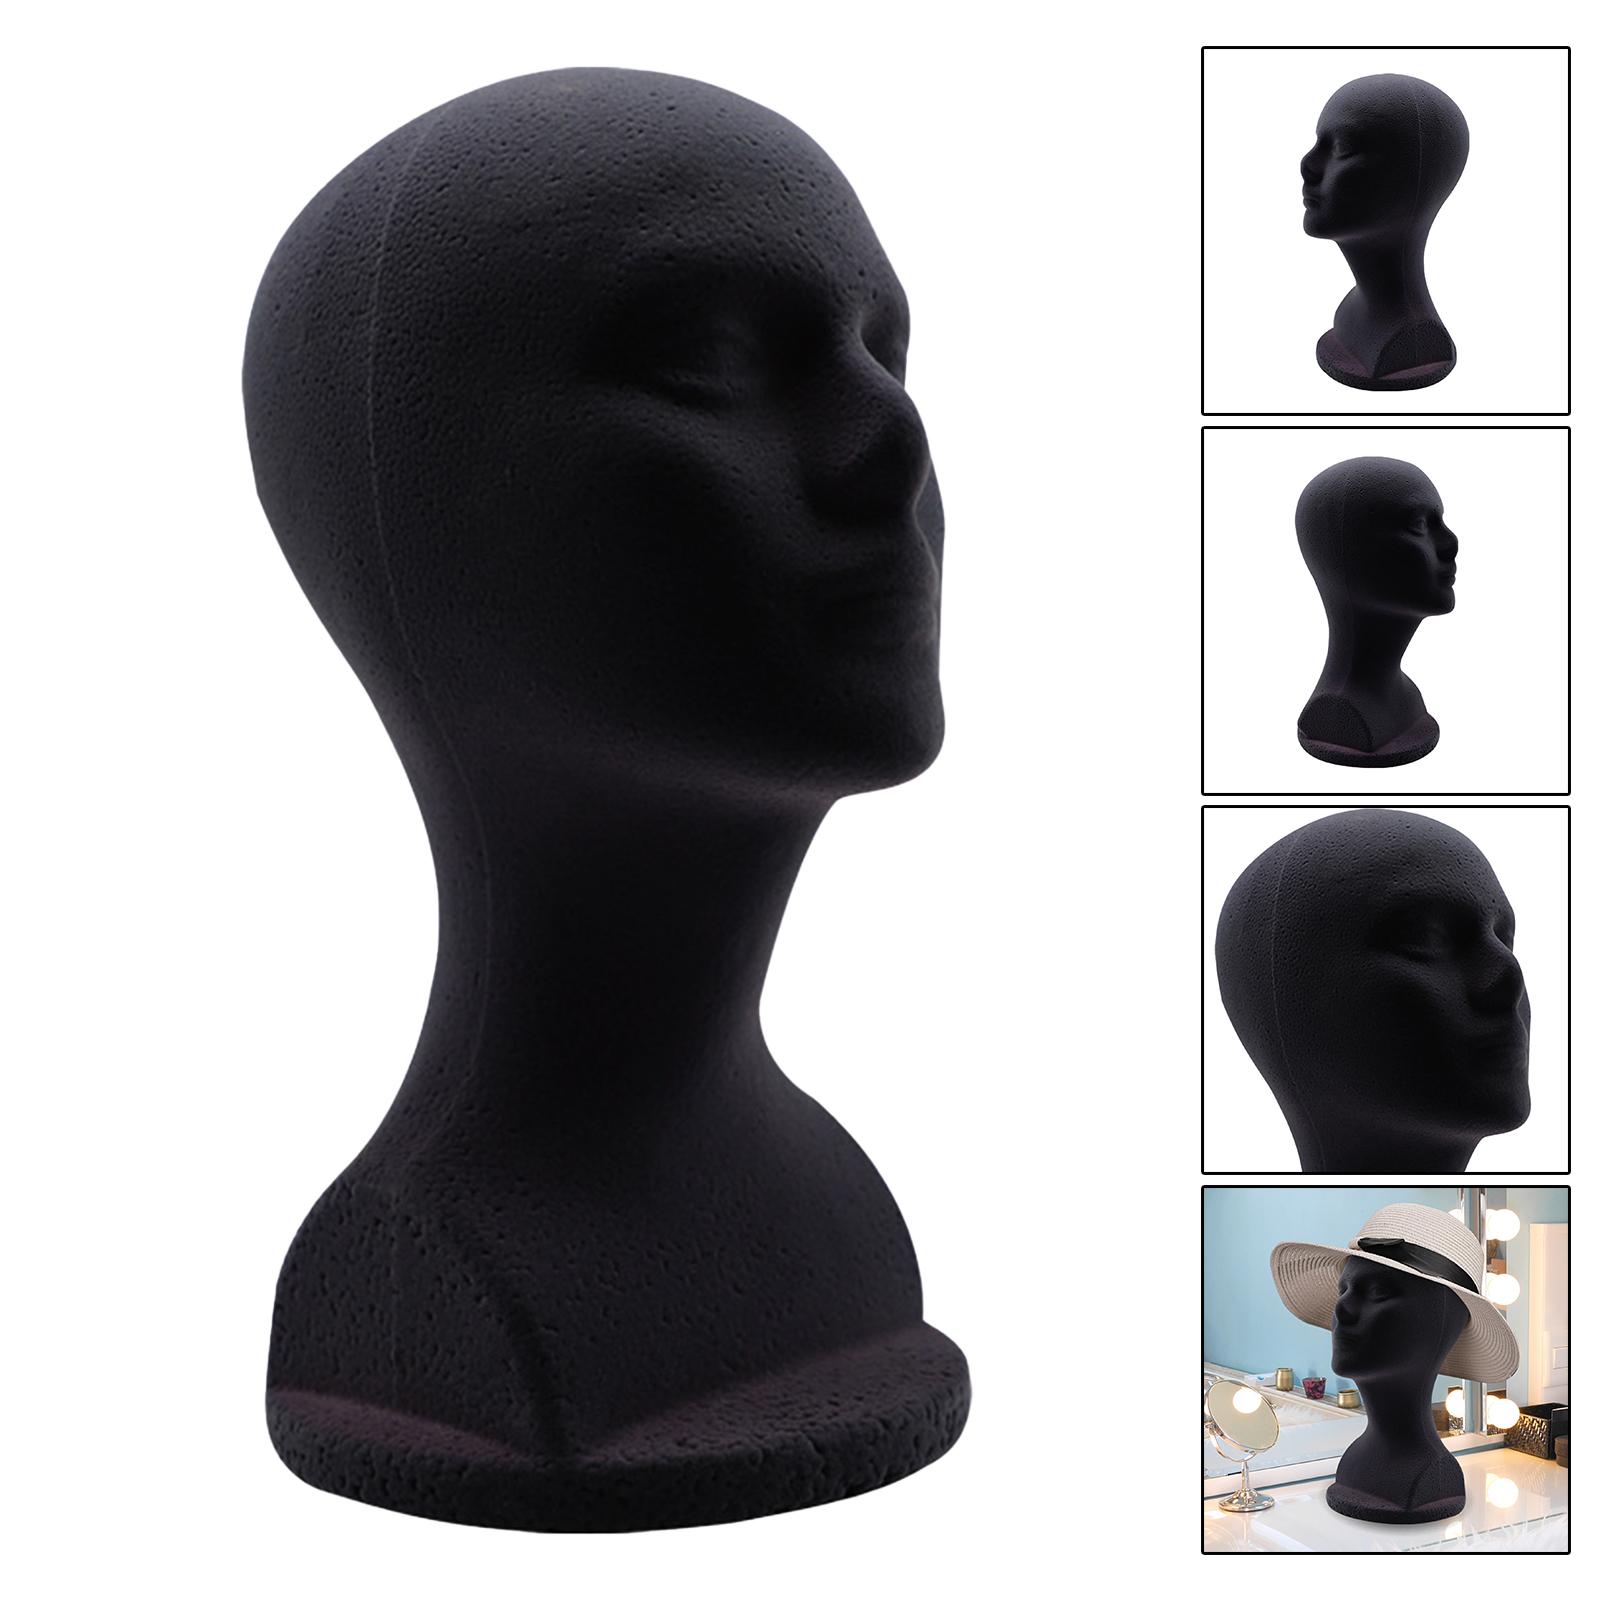 STYROFOAM Mannequin Head Model Satnipt Stand Black 48.5cm Cabeza de circunferencia accesorios de 12.6 pulgadas de altura Base estable de bricolaje